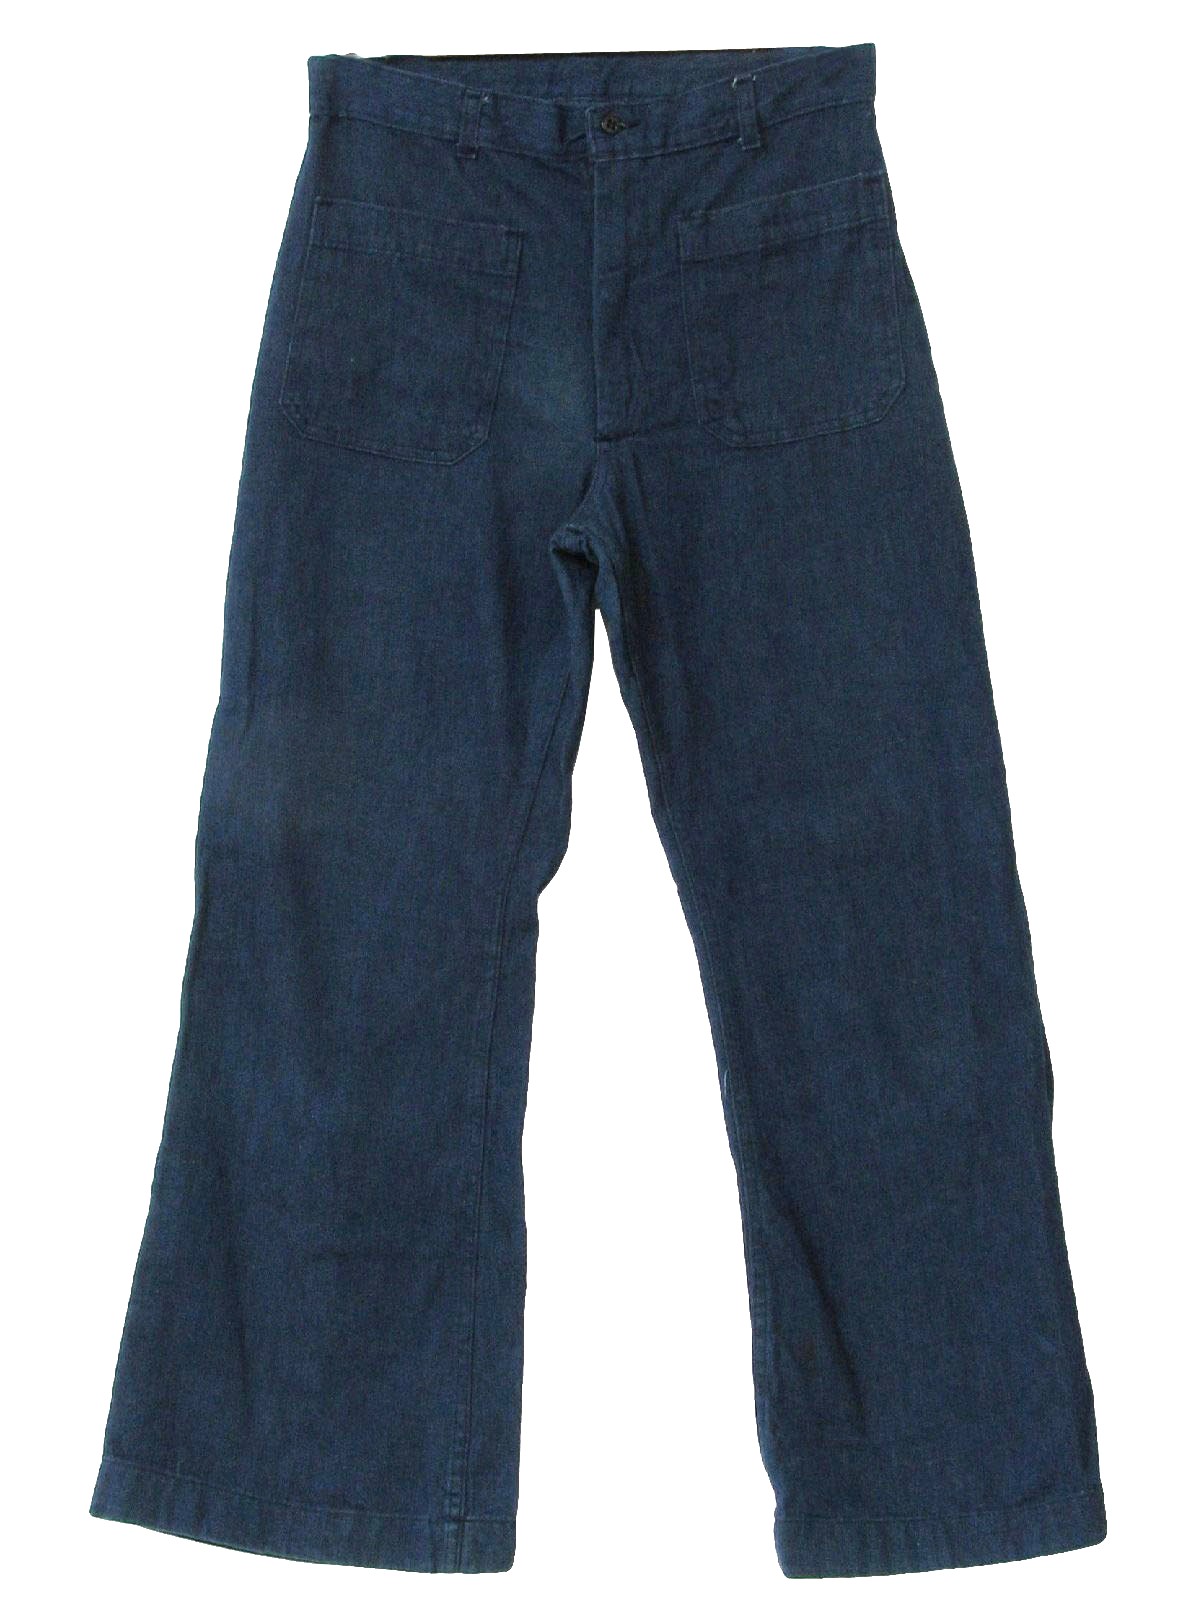 mens bell bottom blue jeans